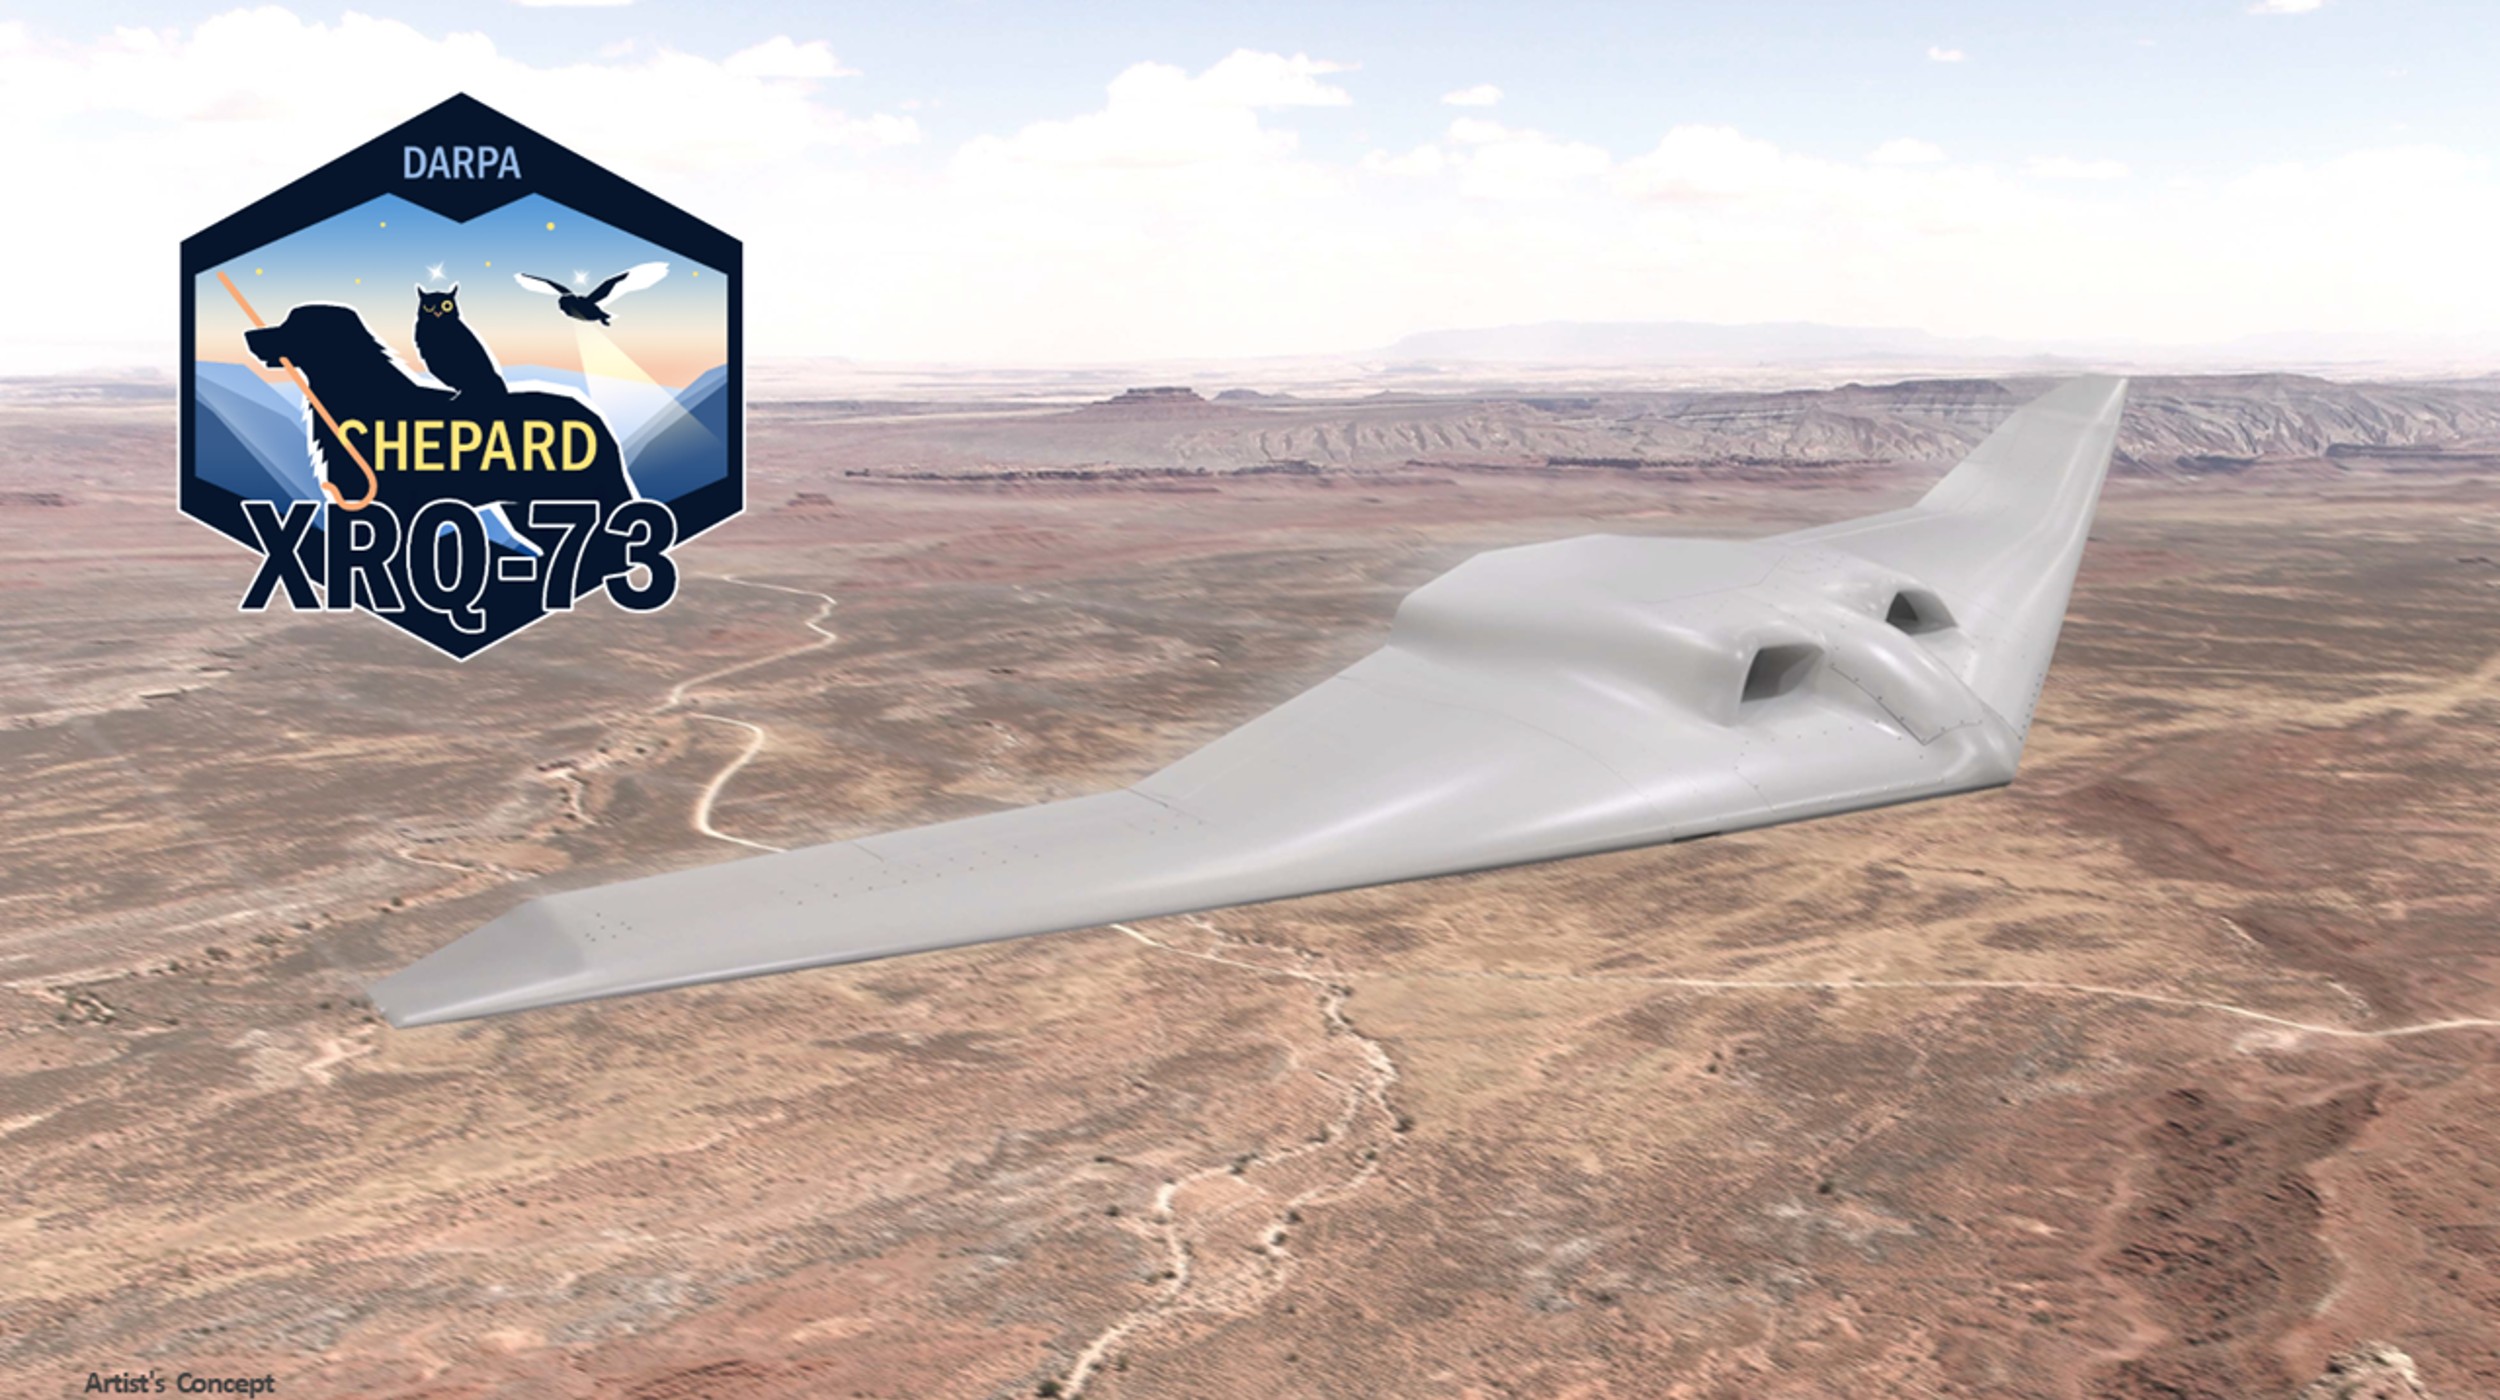 XRQ-73: conheça o novo drone militar híbrido e furtivo da Defesa dos Estados Unidos